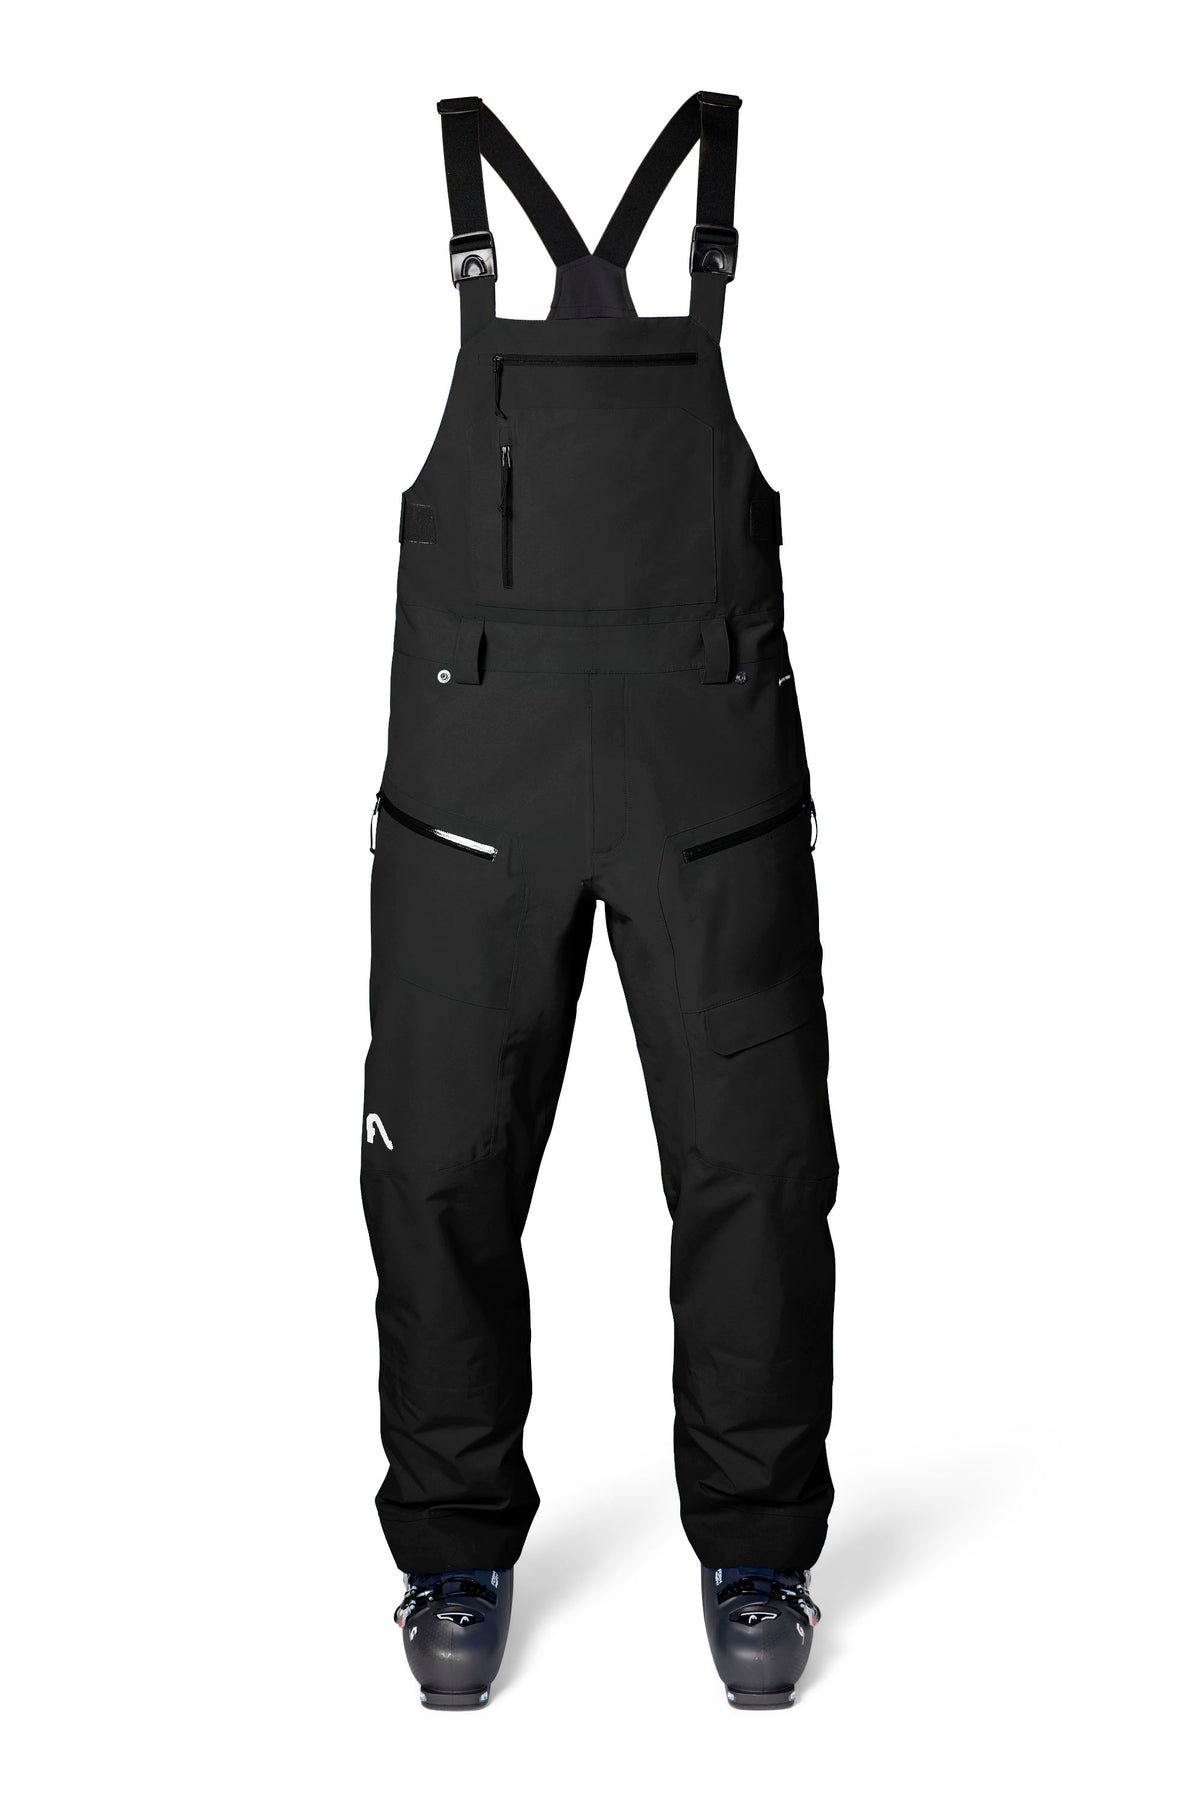 Firebird Bib - Men's Bib Ski Pants | Flylow Gear